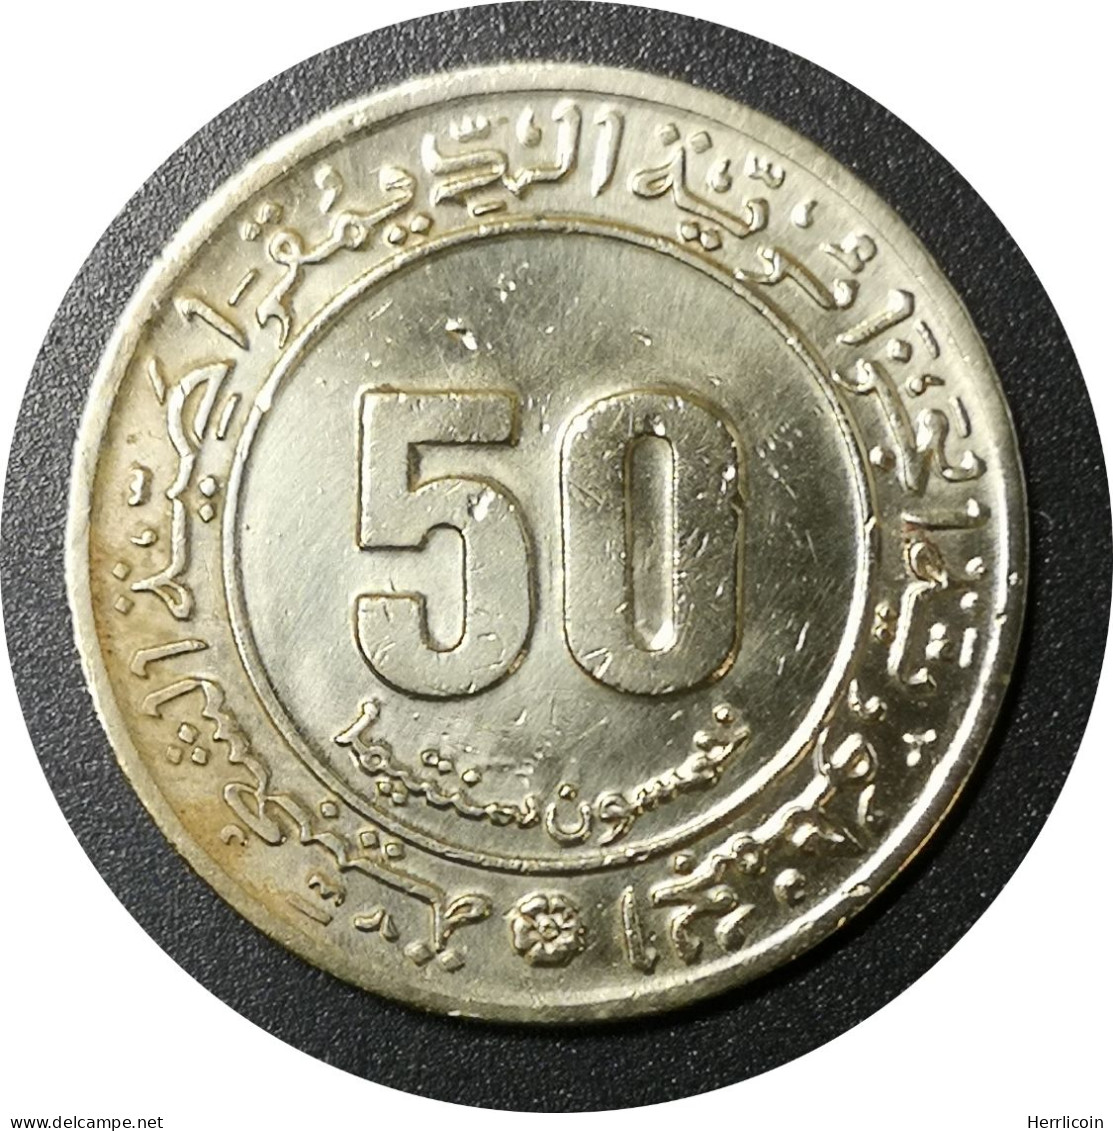 Monnaie Algérie - 1975 - 50 Centimes - Algerien